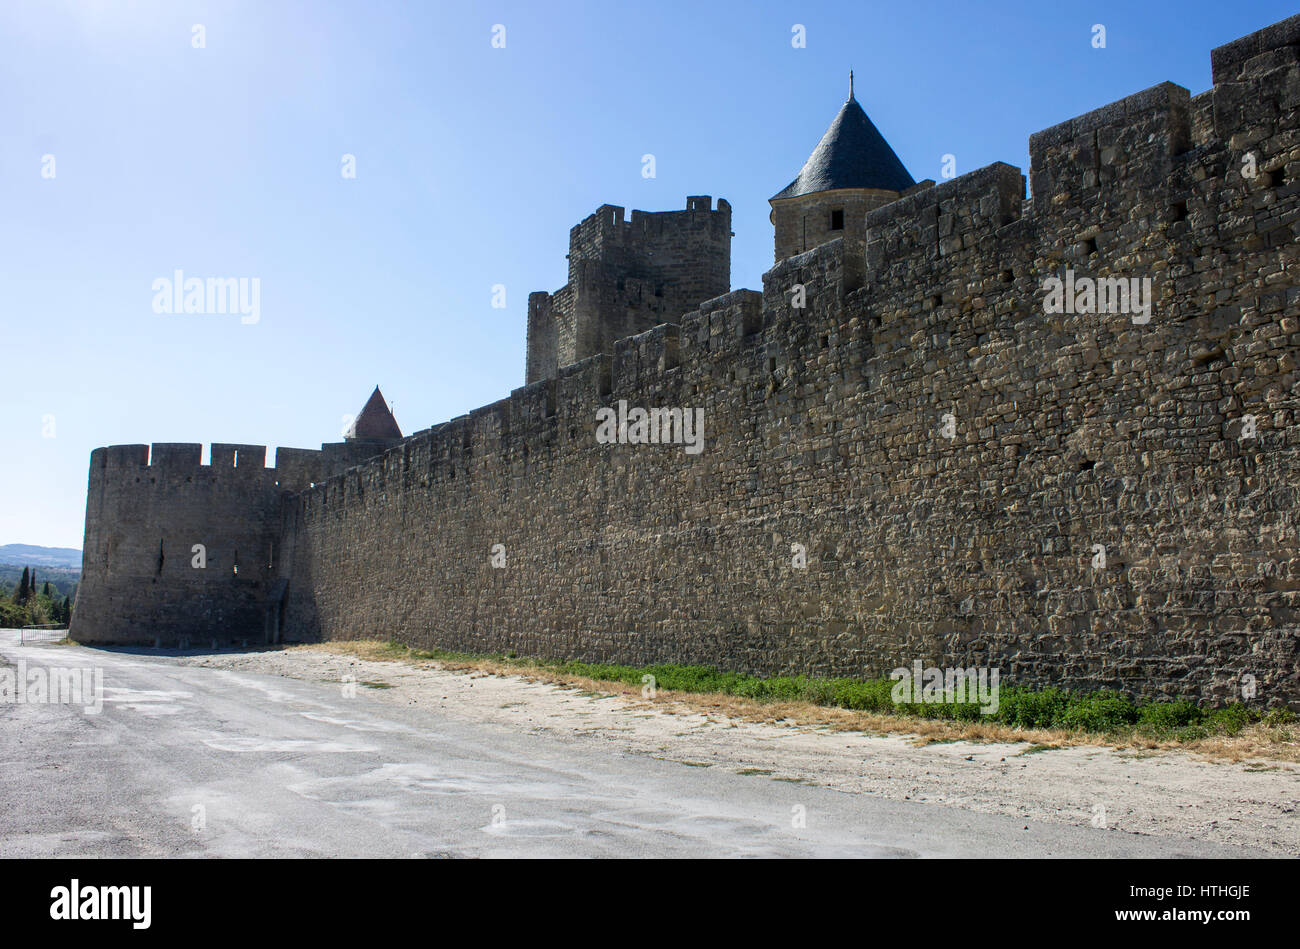 Tours et remparts de la Cité de Carcassonne, forteresse médiévale citadelle situé dans le département de l'Aude, région du Languedoc-Roussillon. Un Worl Banque D'Images